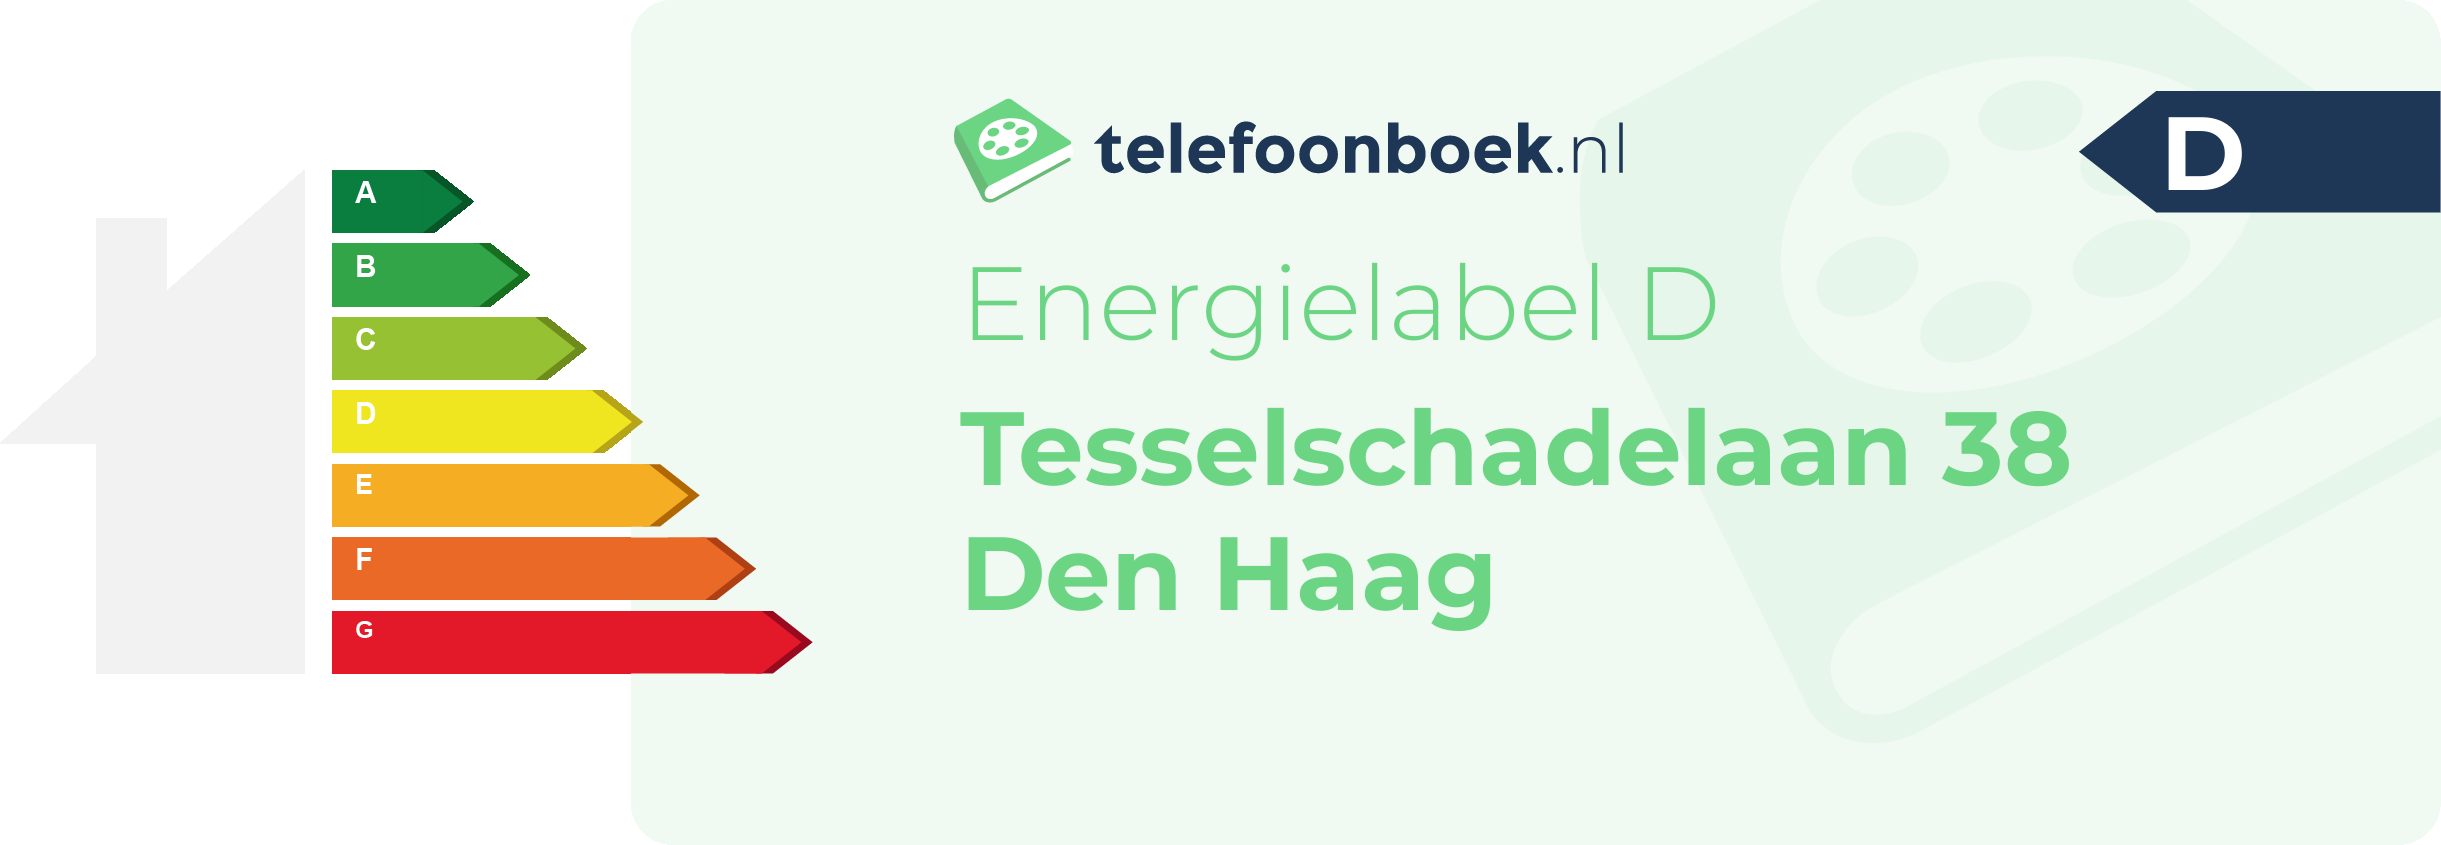 Energielabel Tesselschadelaan 38 Den Haag